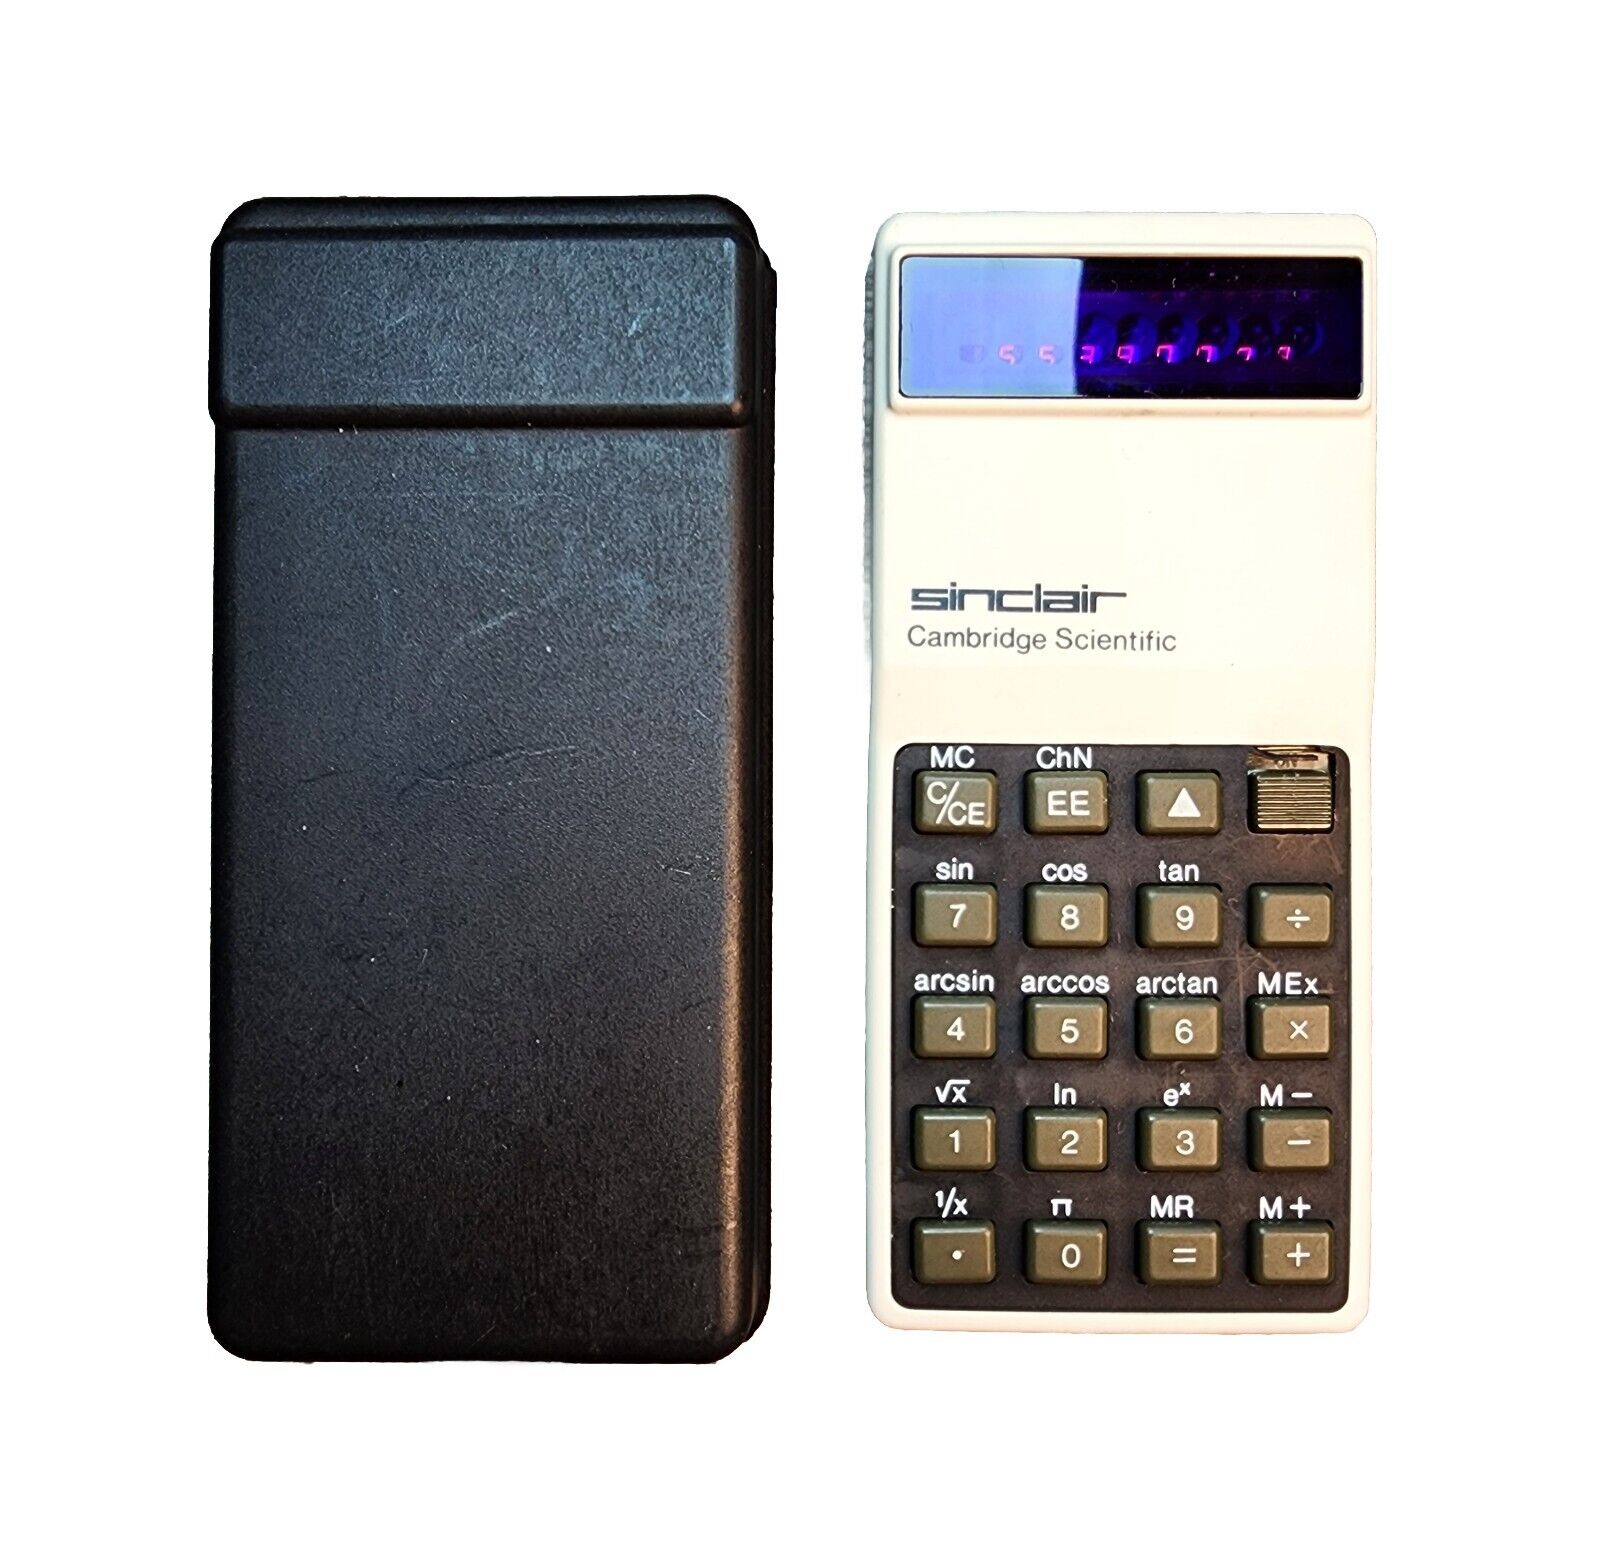 Vintage Sinclair Cambridge Scientific Programmable Calculator w/ Case